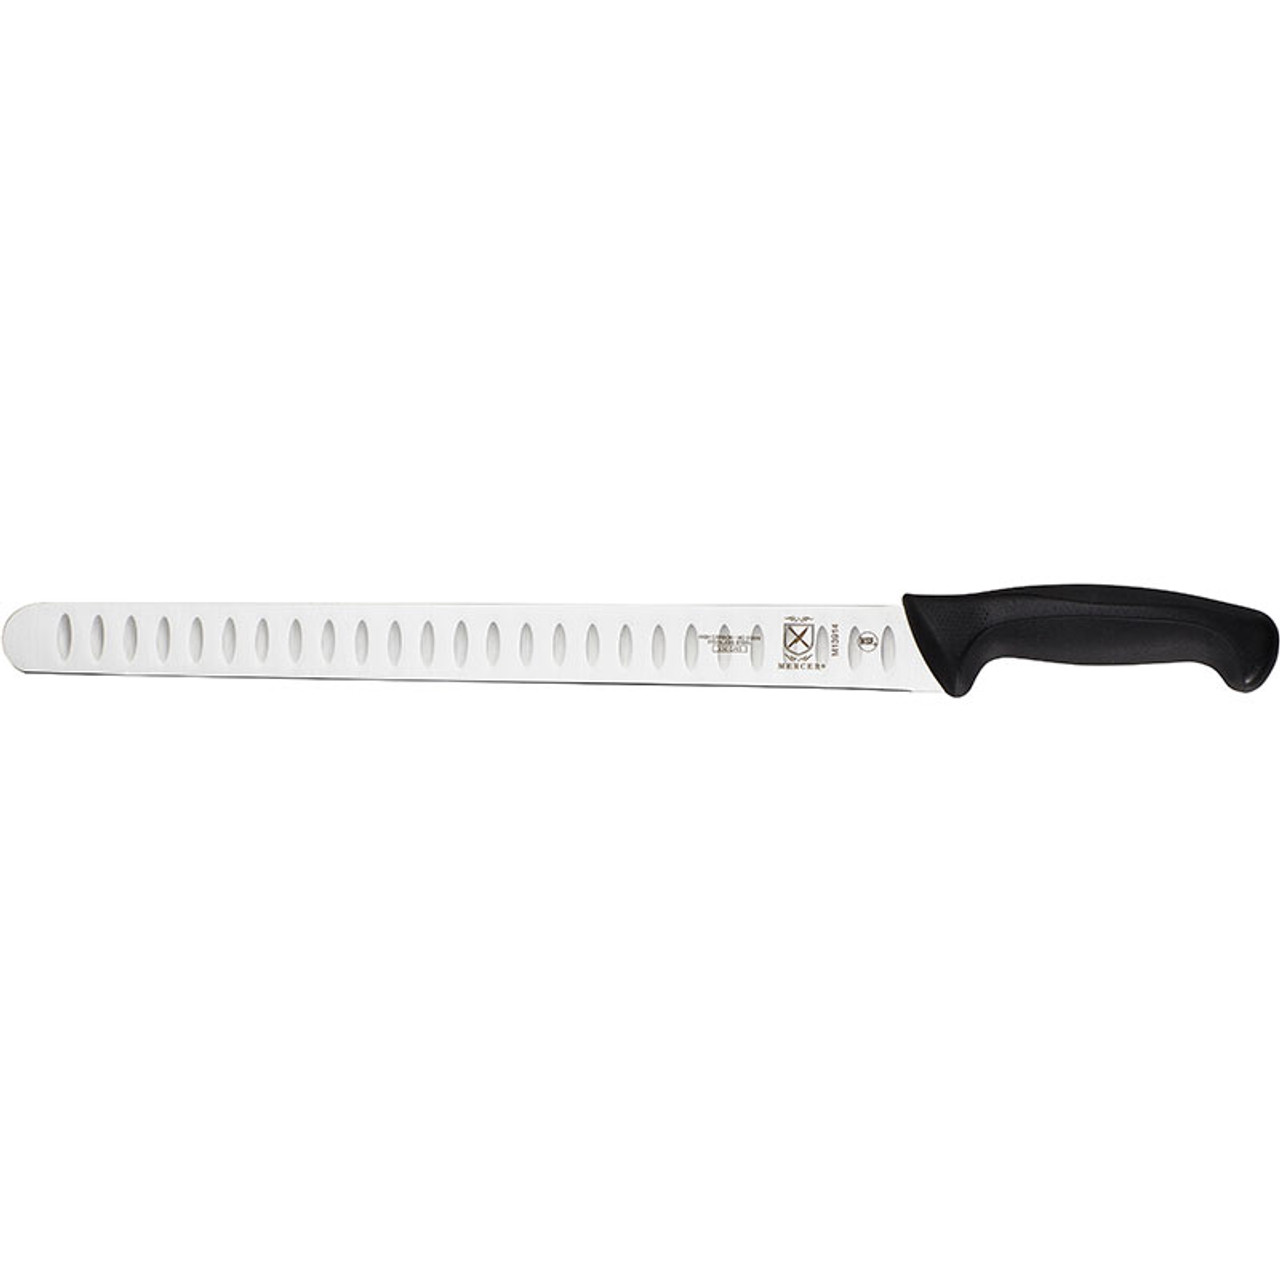 Knife Flight Loaner Knife Set from Mercer